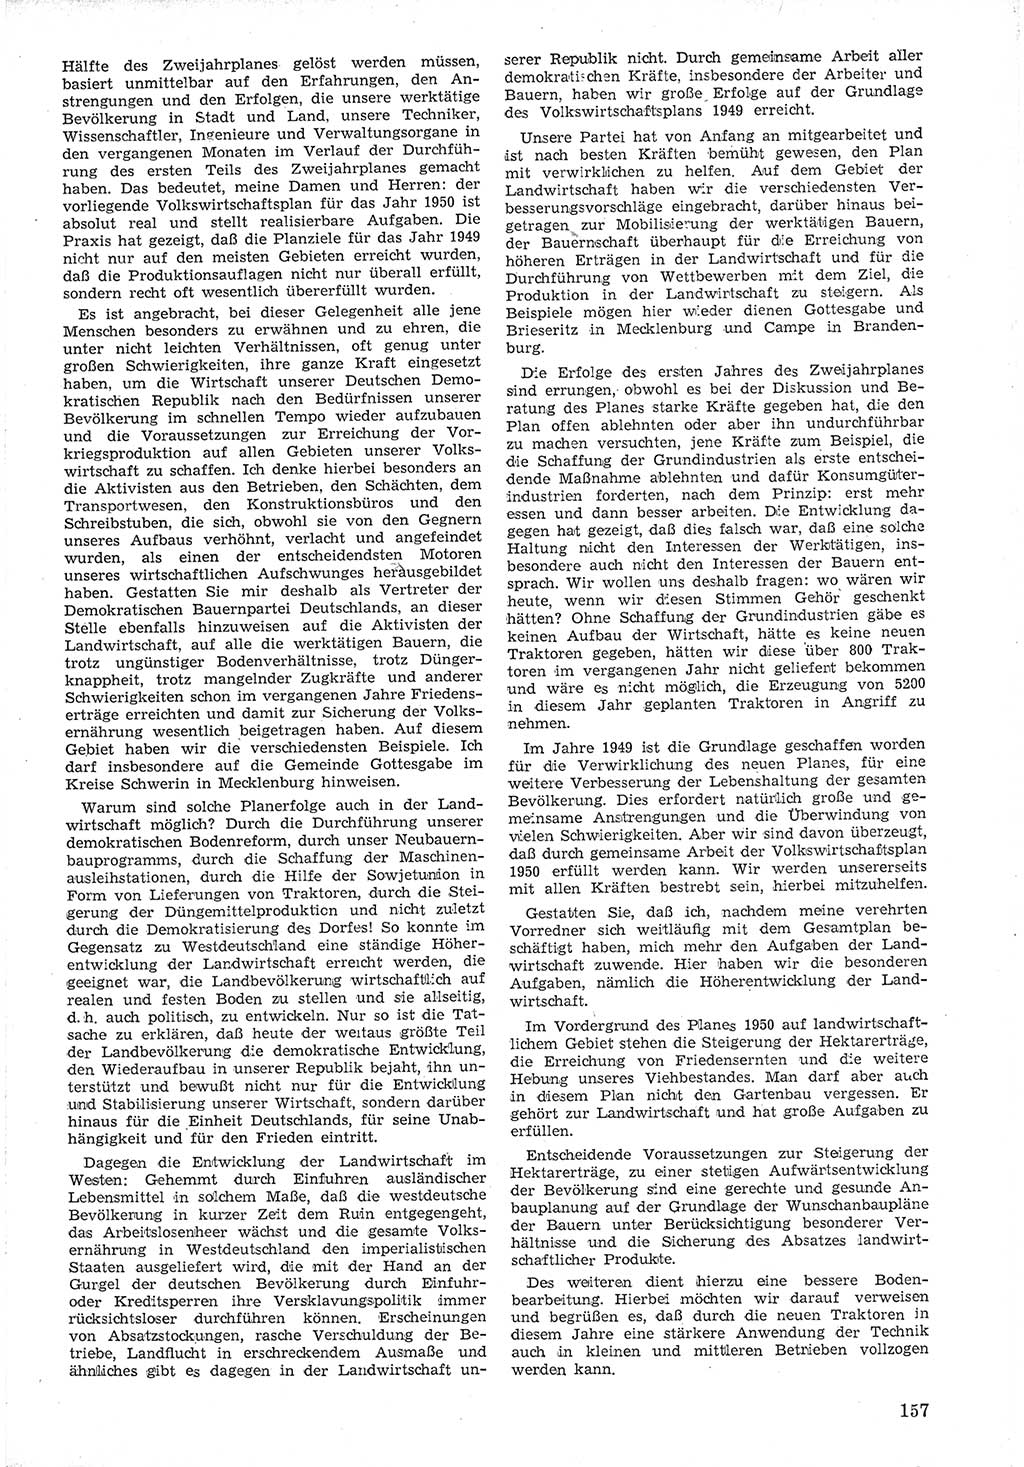 Provisorische Volkskammer (VK) der Deutschen Demokratischen Republik (DDR) 1949-1950, Dokument 169 (Prov. VK DDR 1949-1950, Dok. 169)